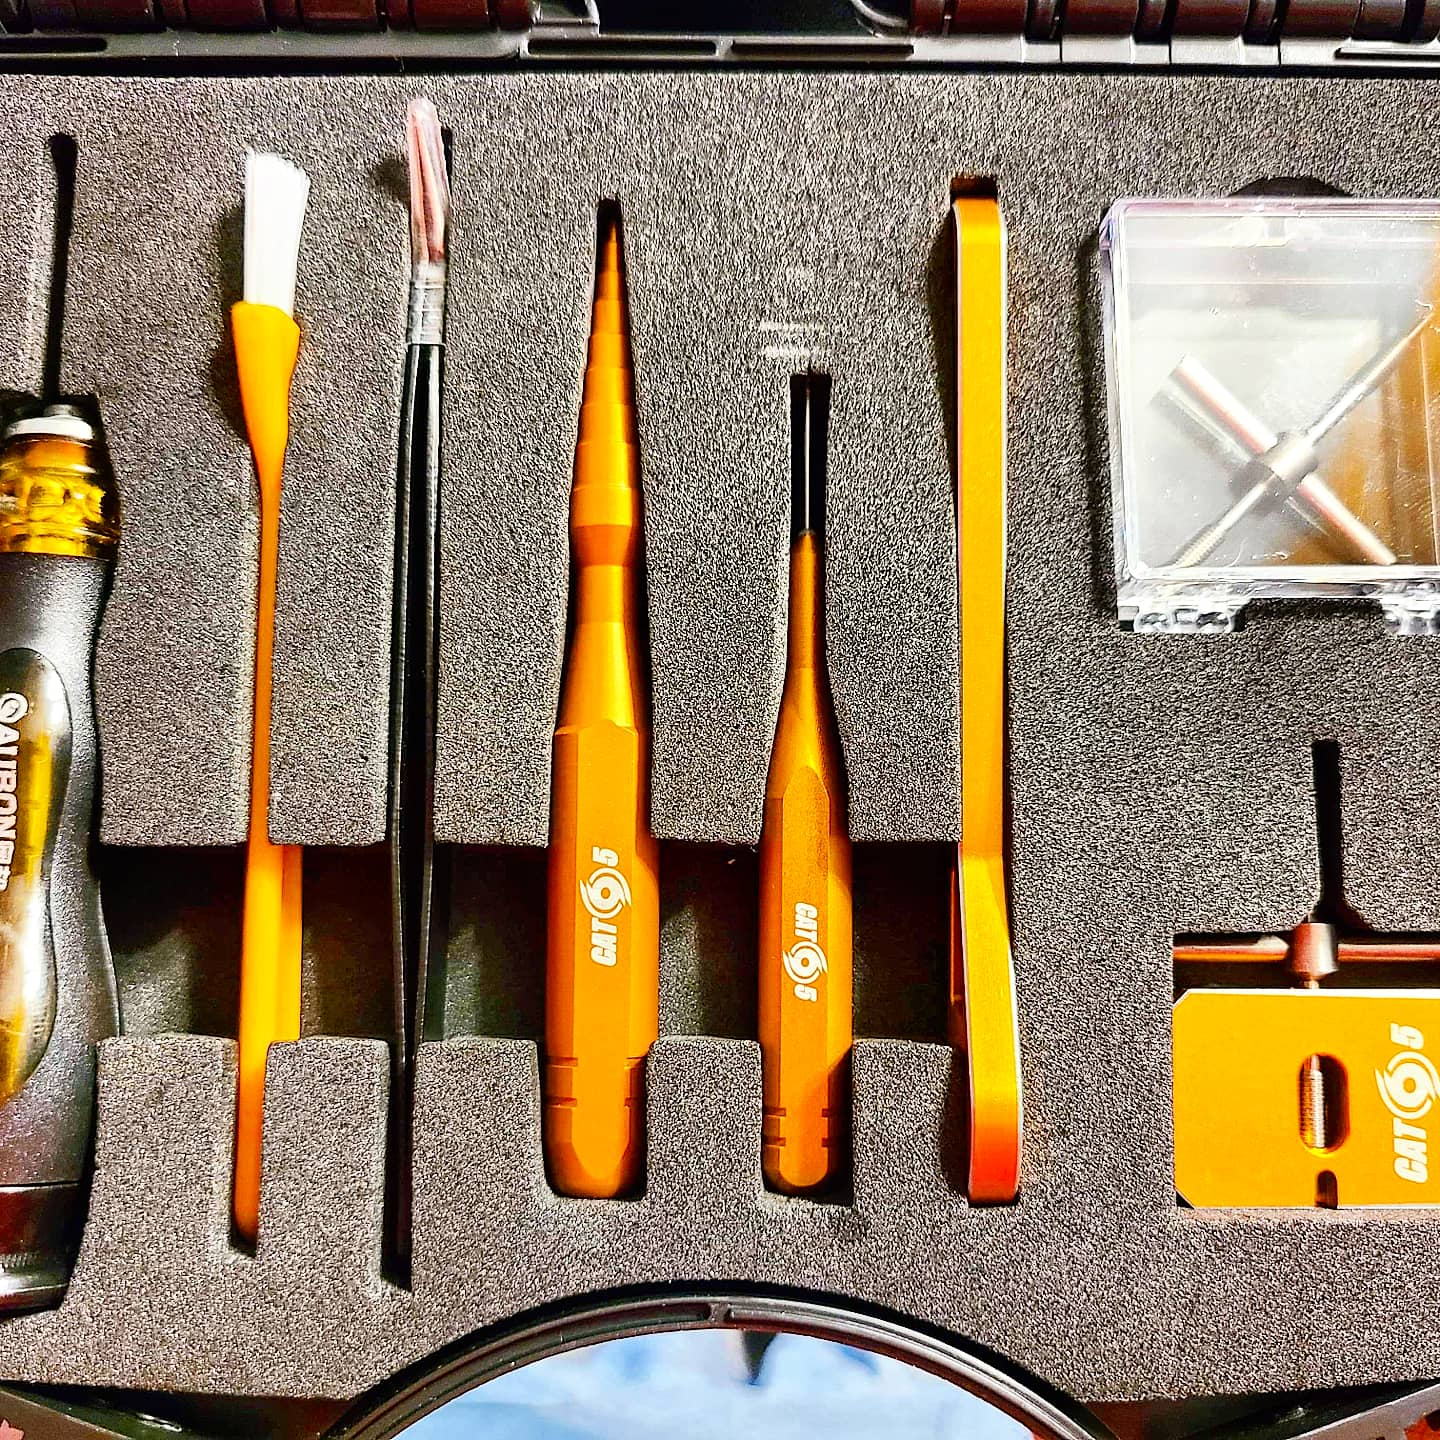 Fishing reel repair tool kit